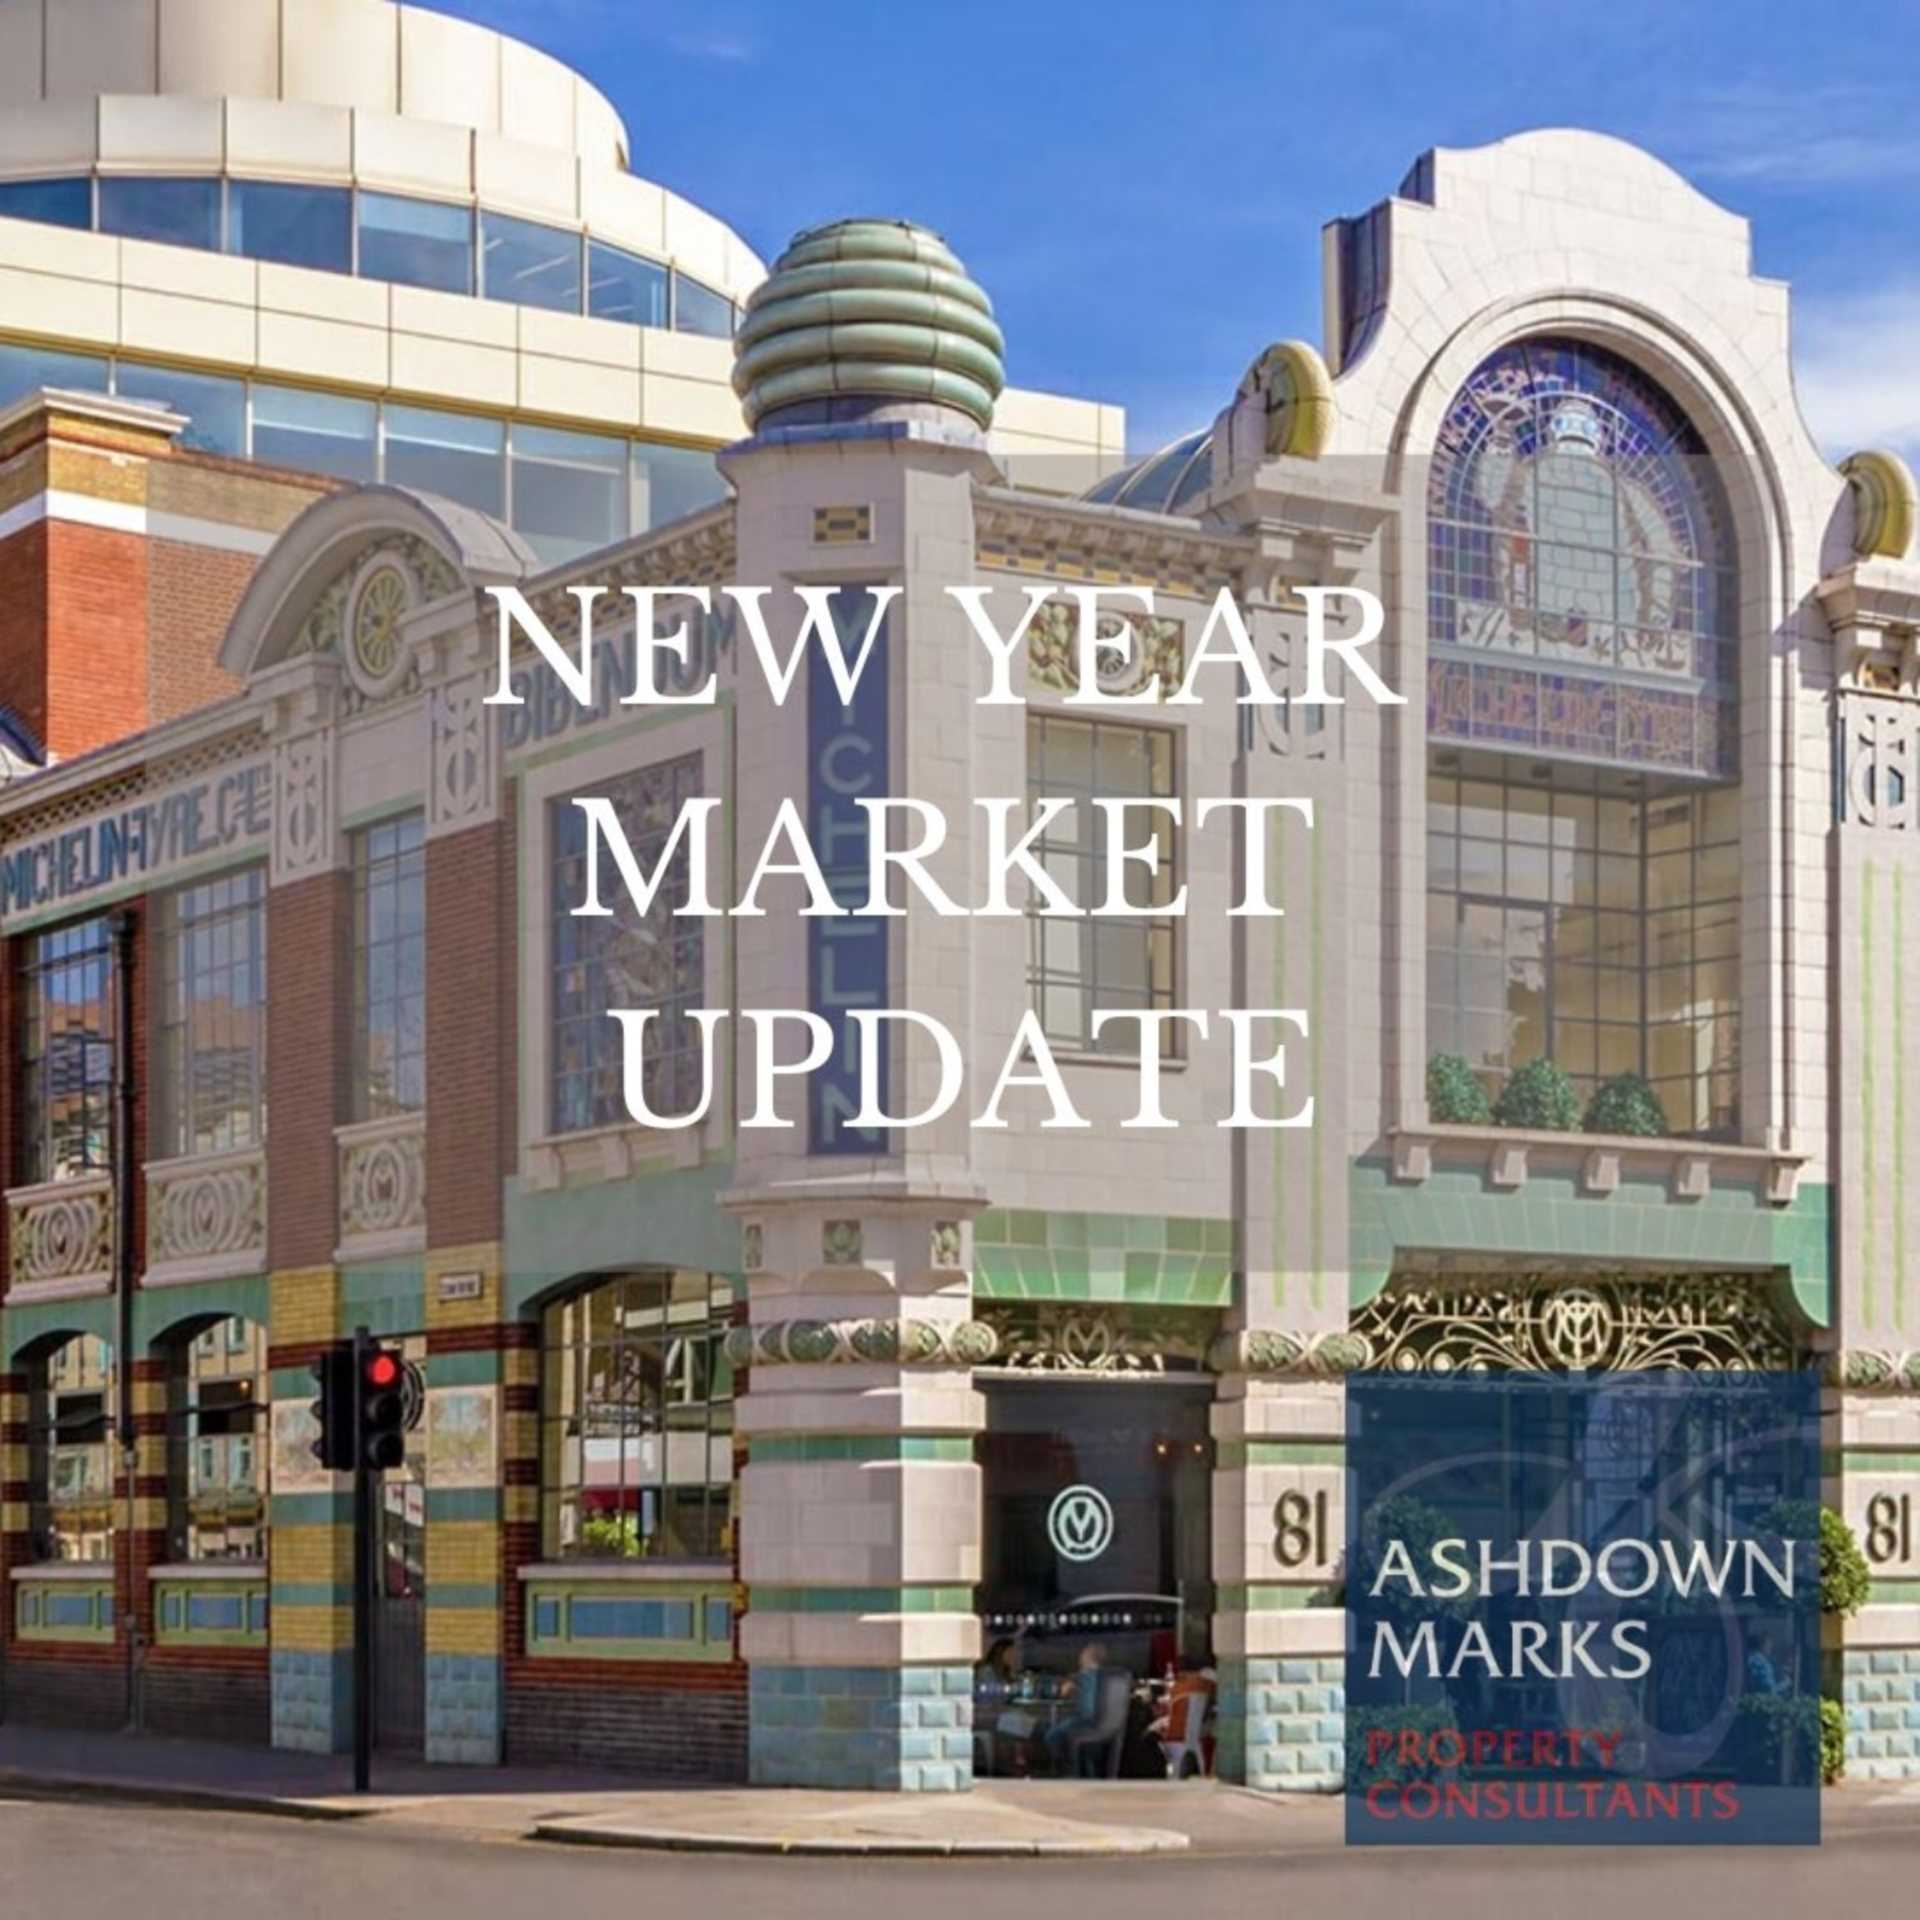 New Year Market Update